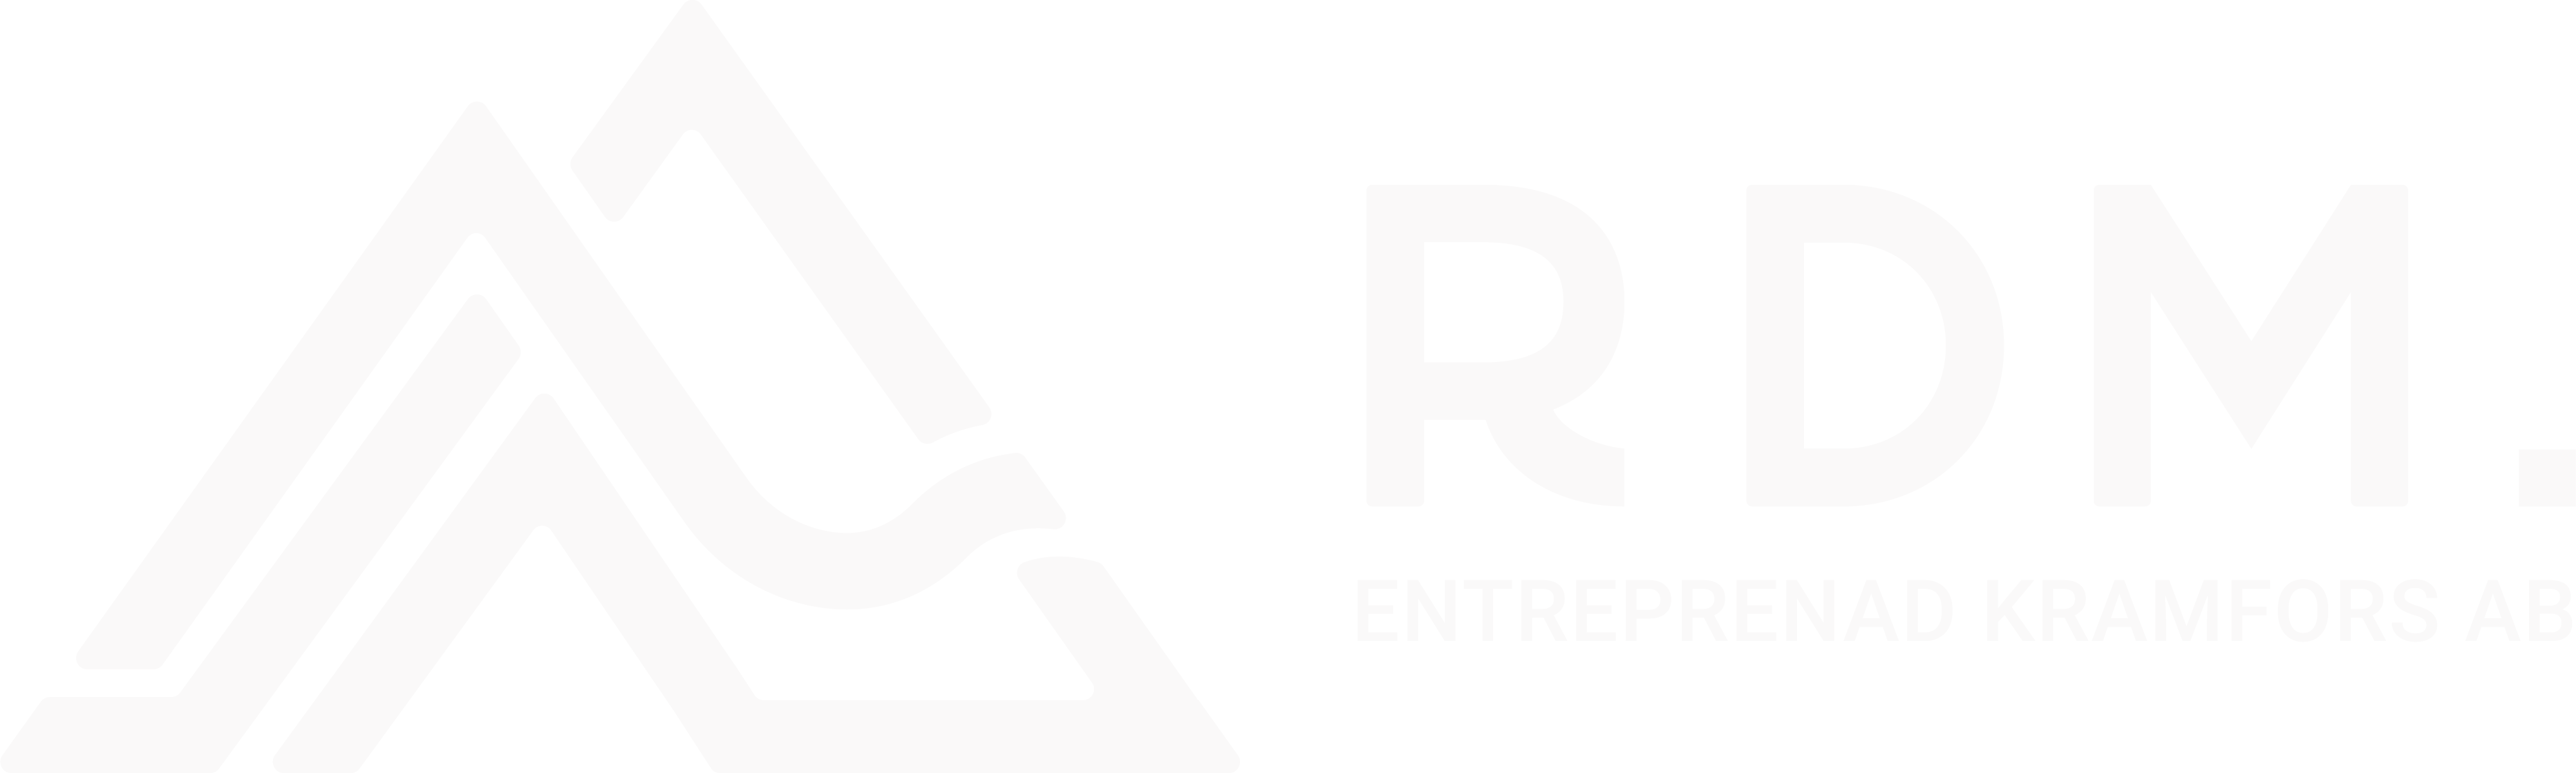 RDM Entreprenad Kramfors